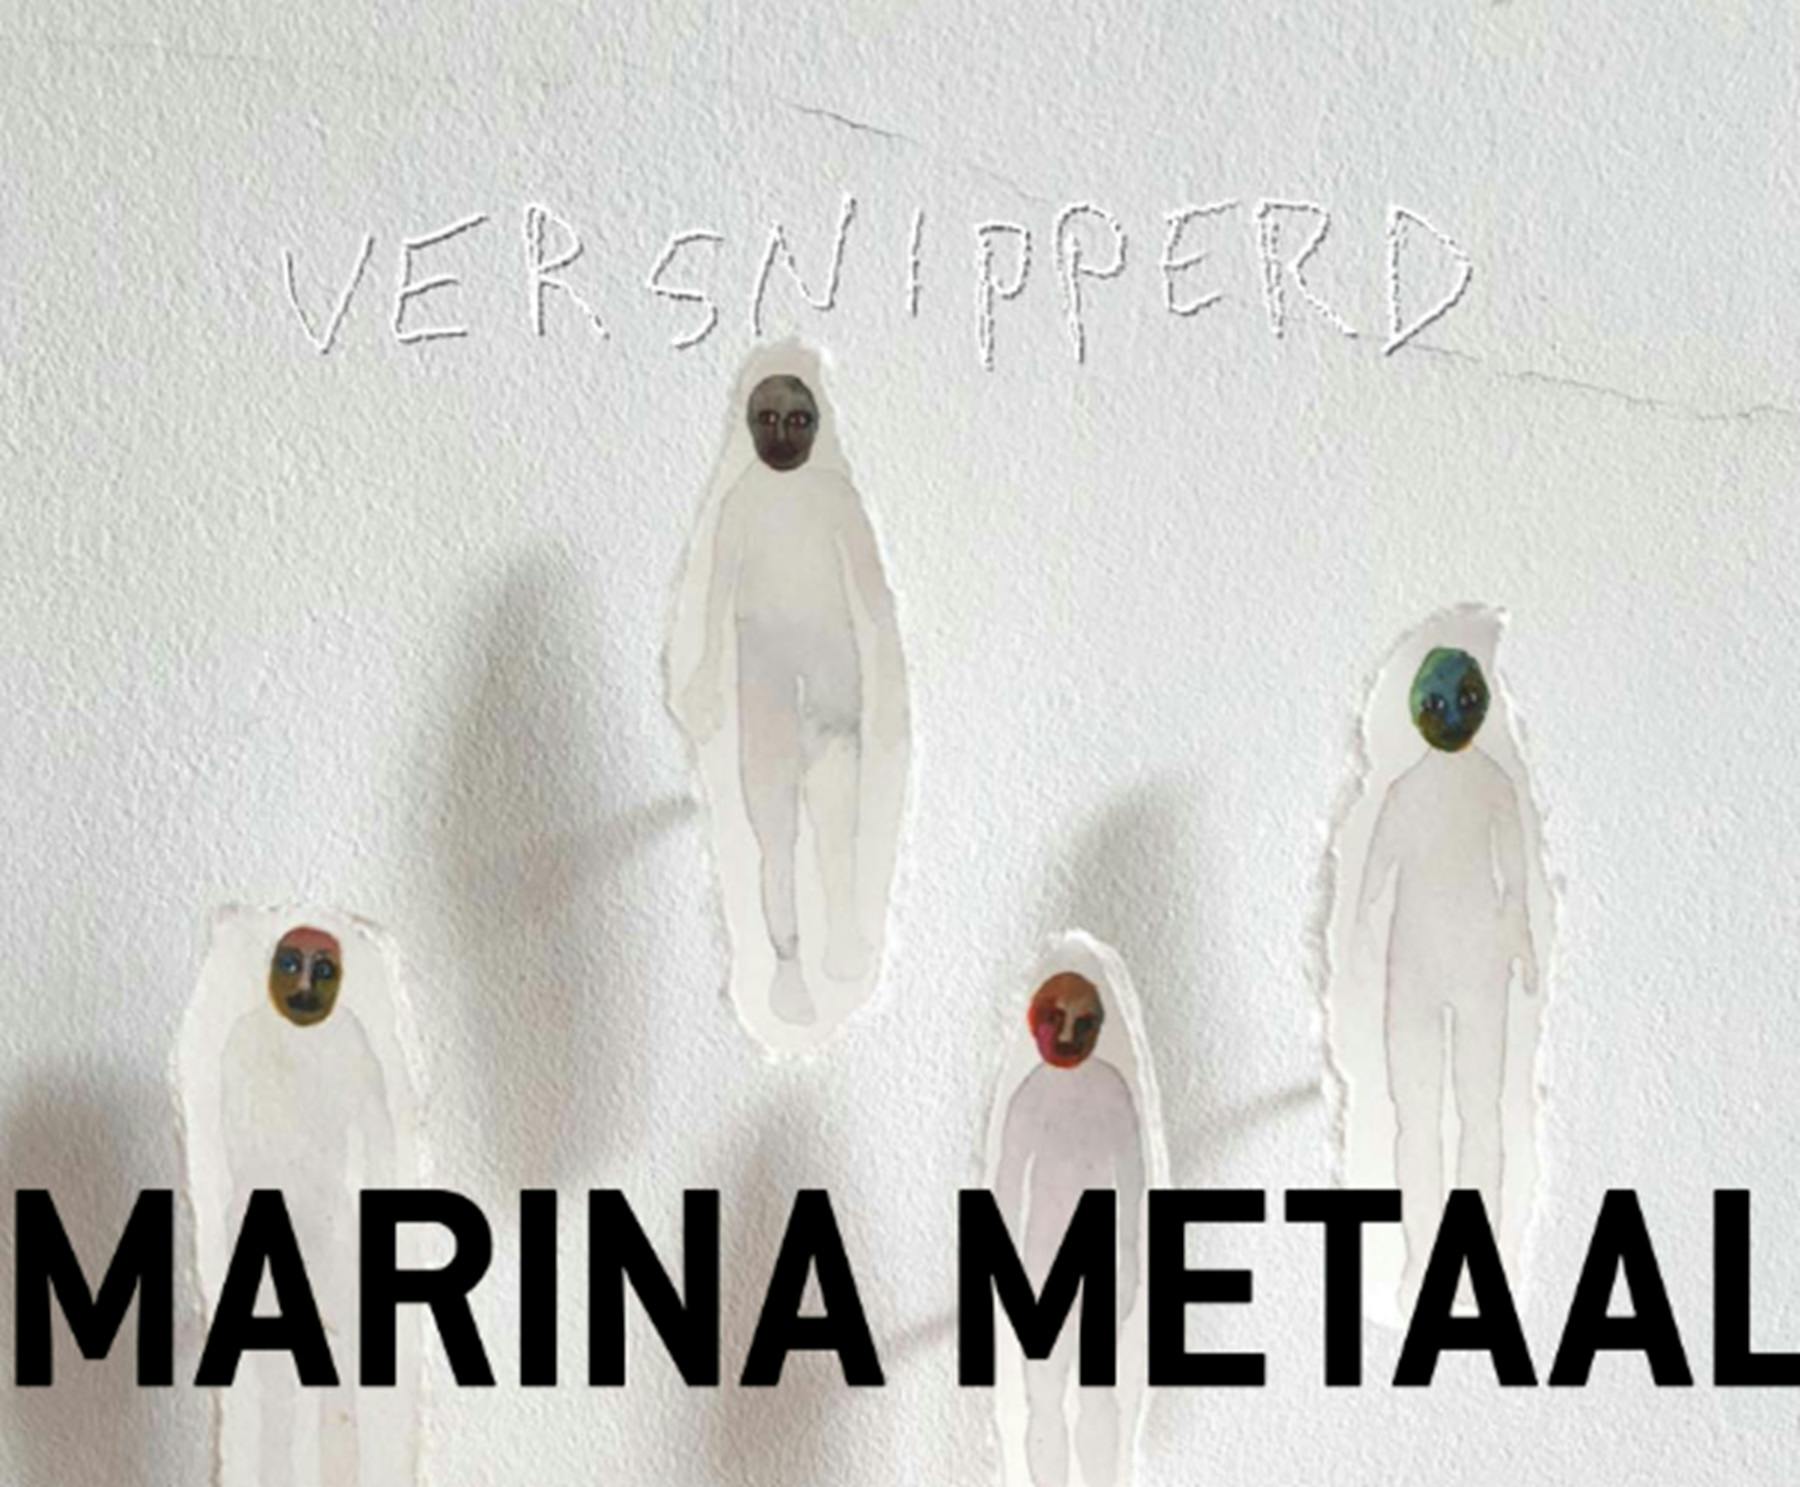 SHREDDED- Marina Metaal